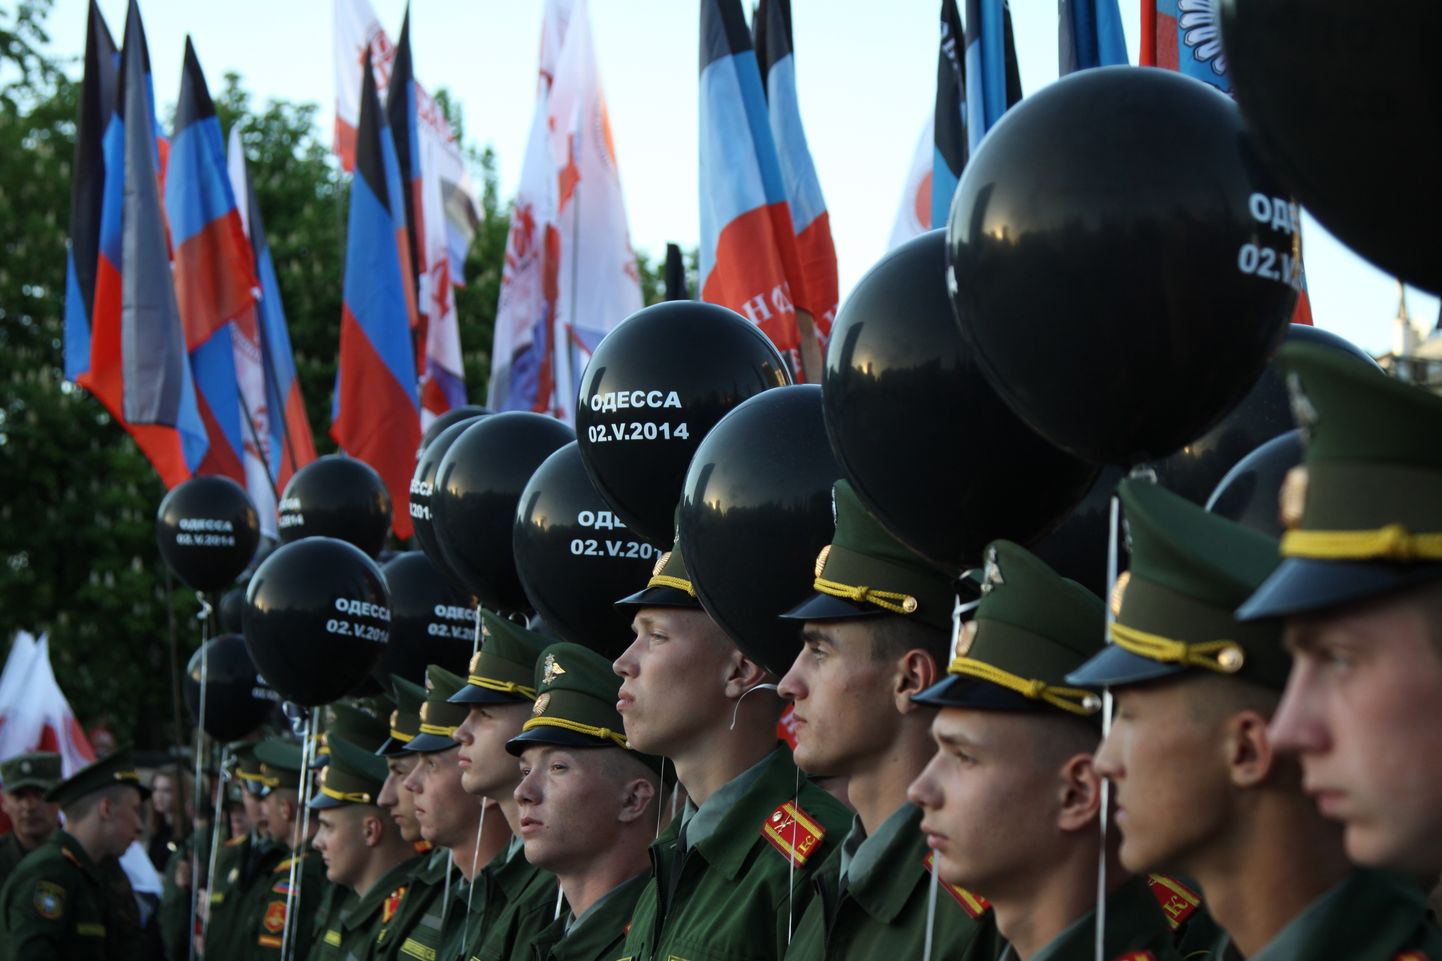 Donetskis mälestati 2014. aasta Odessa kokkupõrgetes hukkunuid.